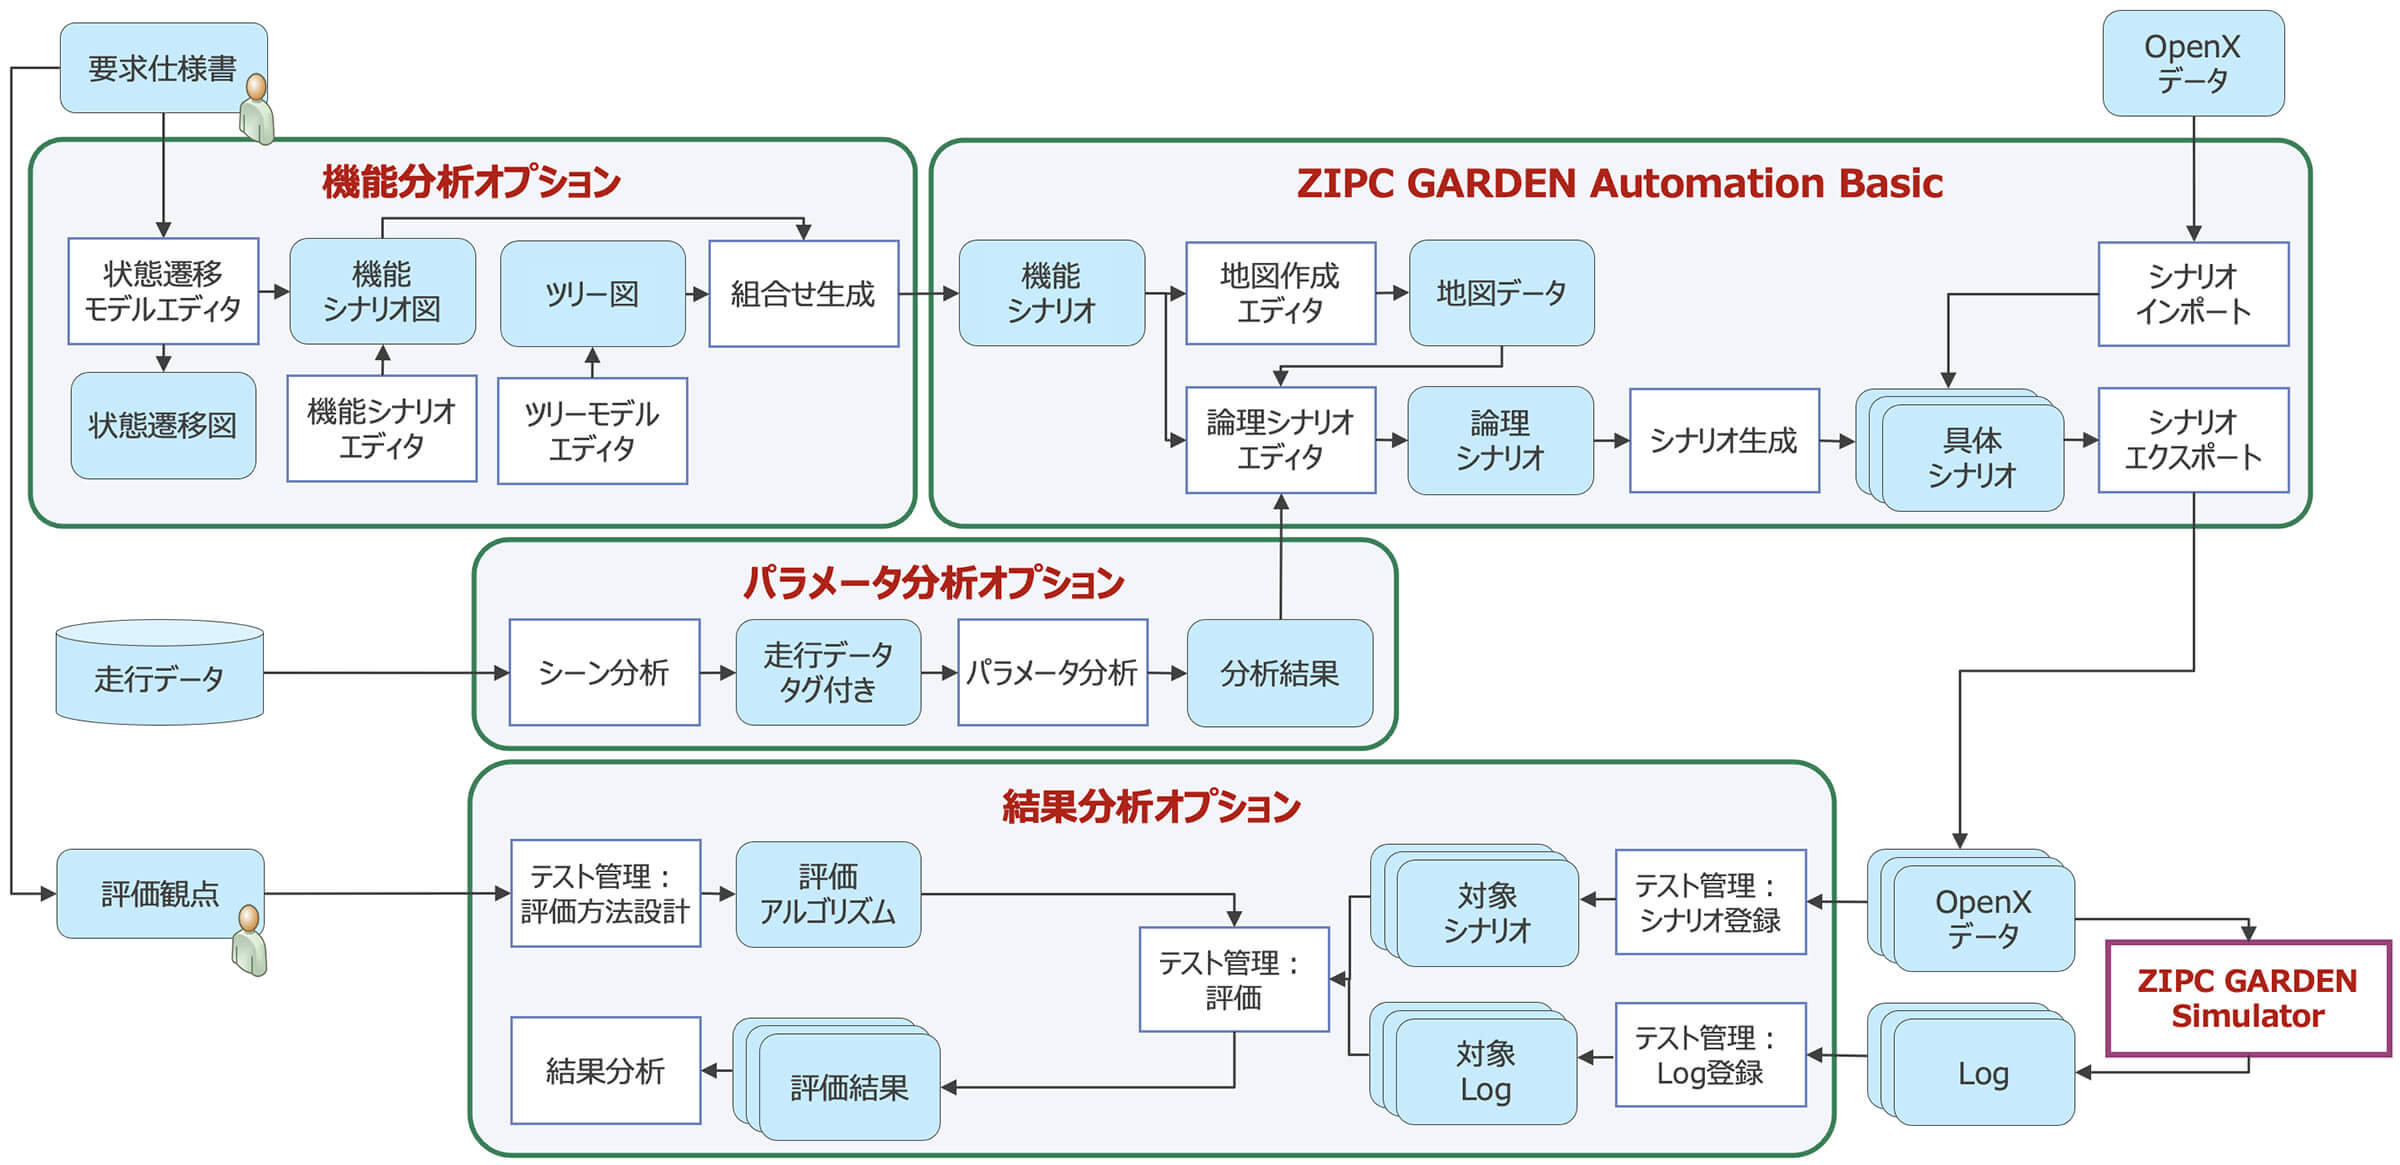 ZIPC GARDEN Automationパッケージ